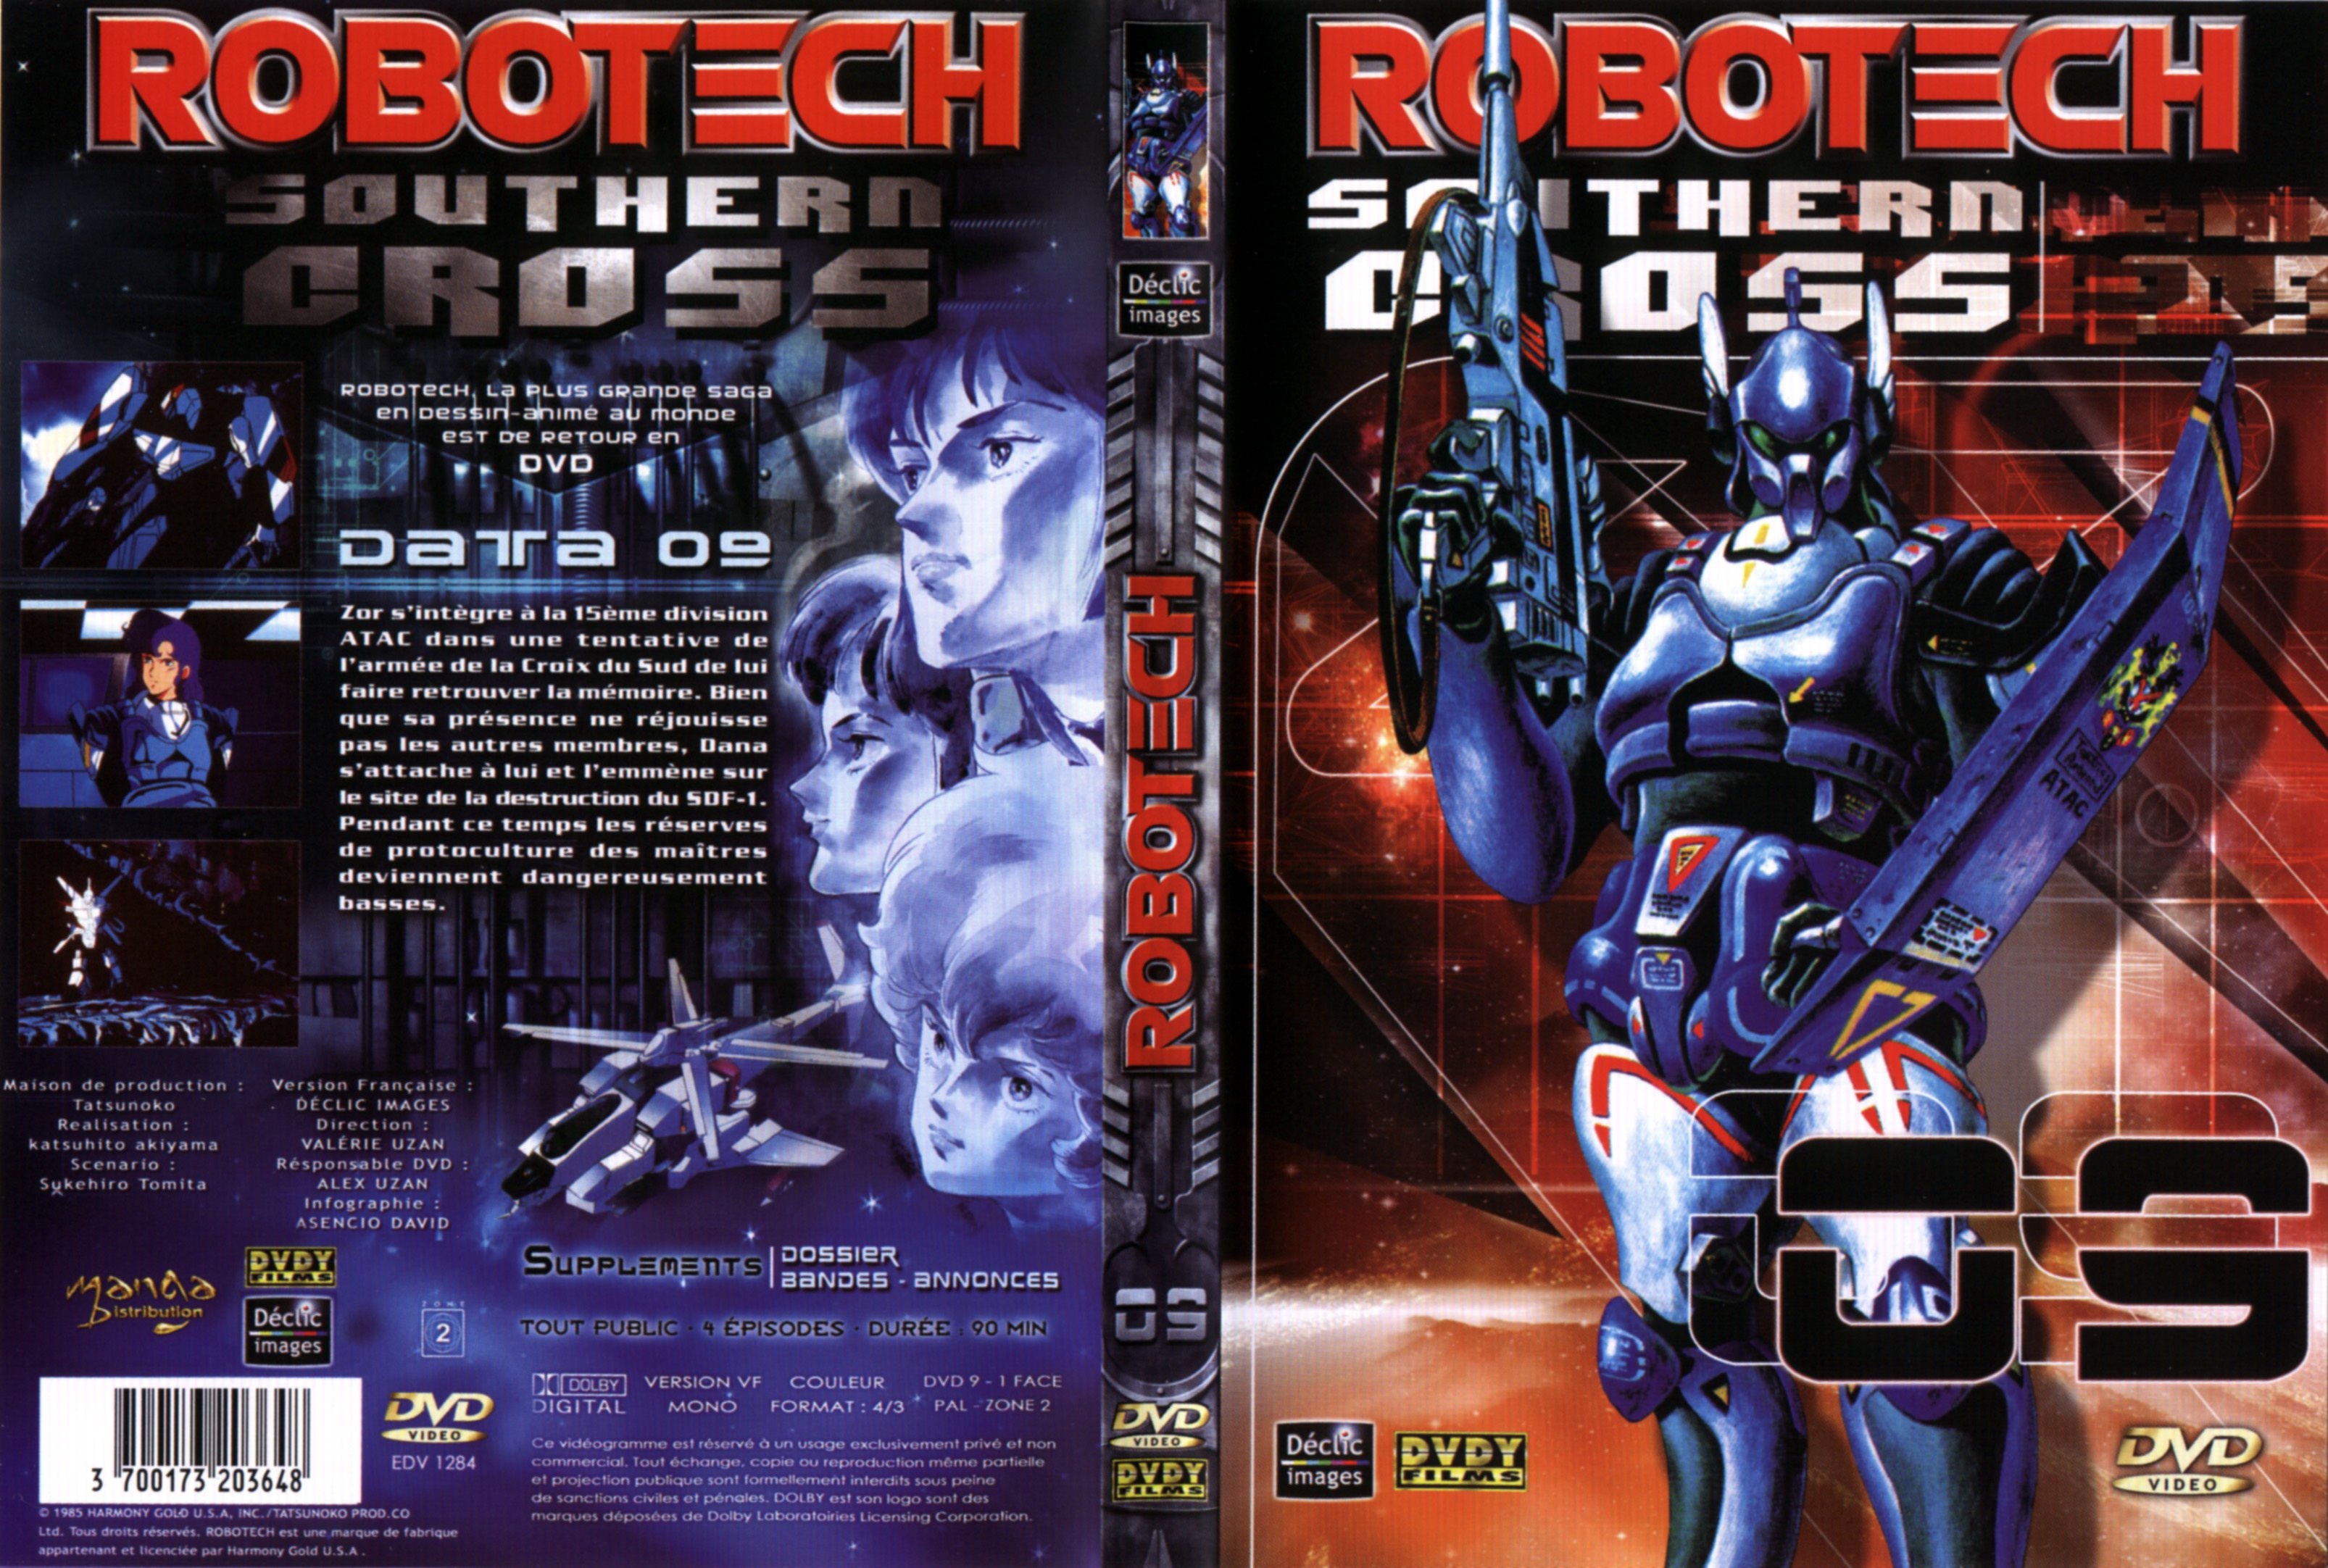 Jaquette DVD Robotech Southern cross vol 09